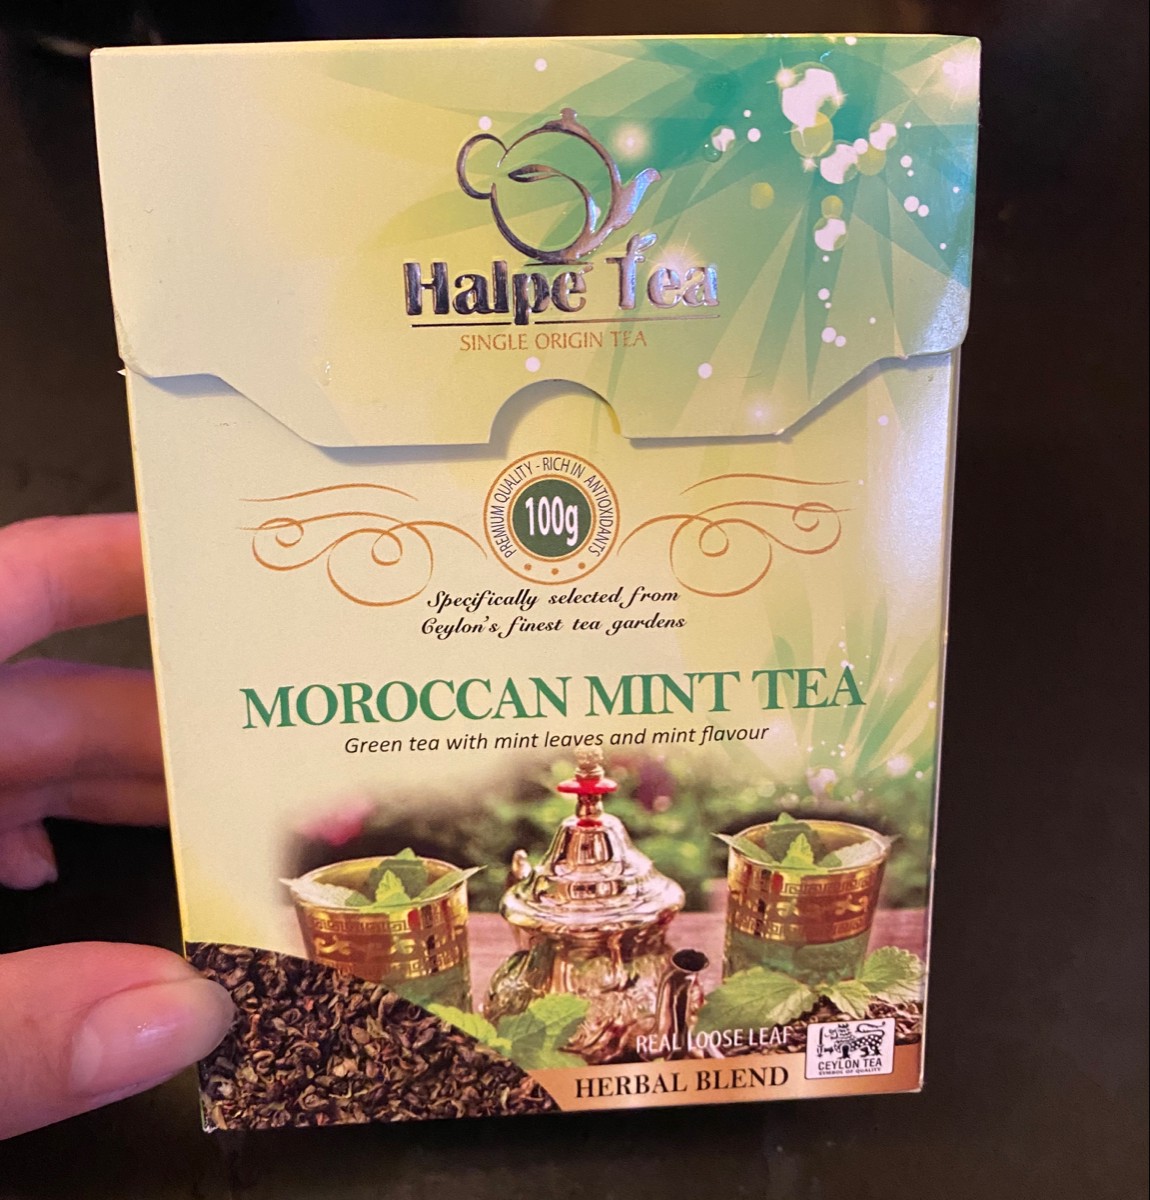 Марокканская мята чай. Марокканский чай с мятой. Чай Halpe Tea. Чай "мята Марокканская". Halpe Tea цейлонский чай.